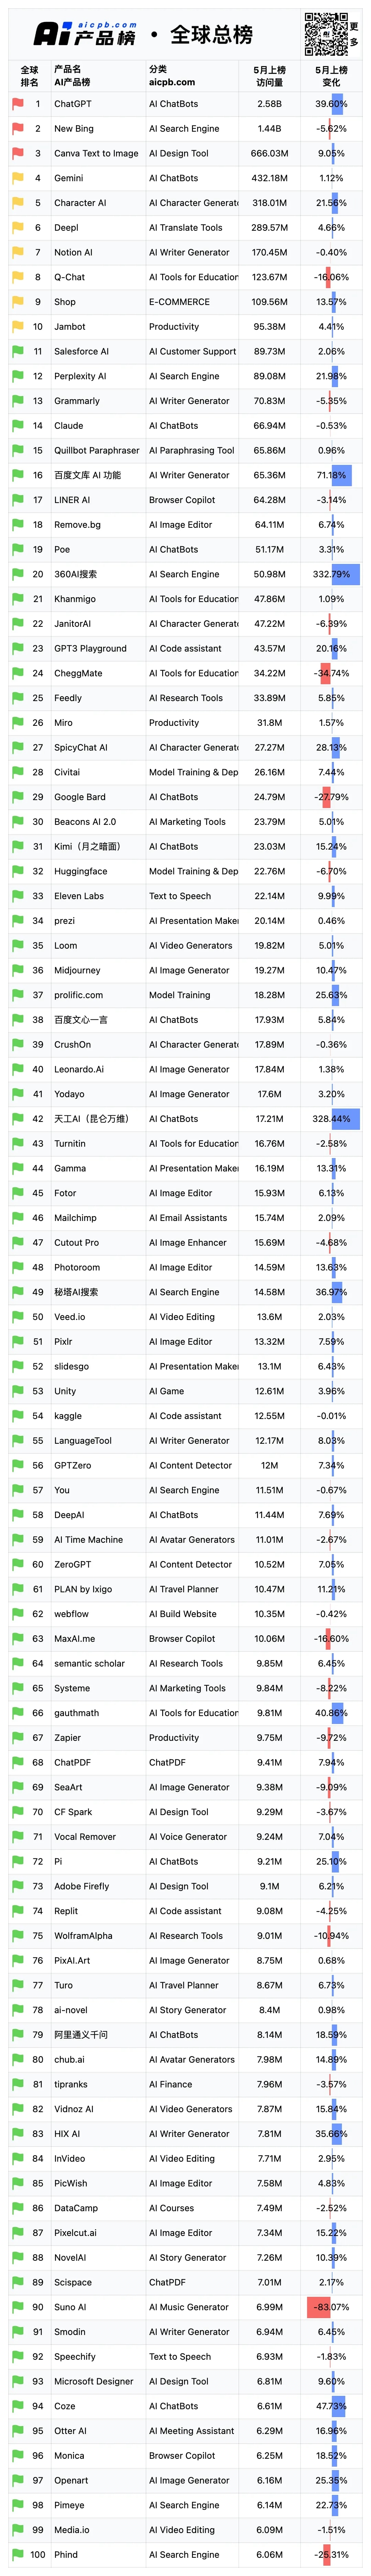 5月份AI产品榜-全球总榜数据